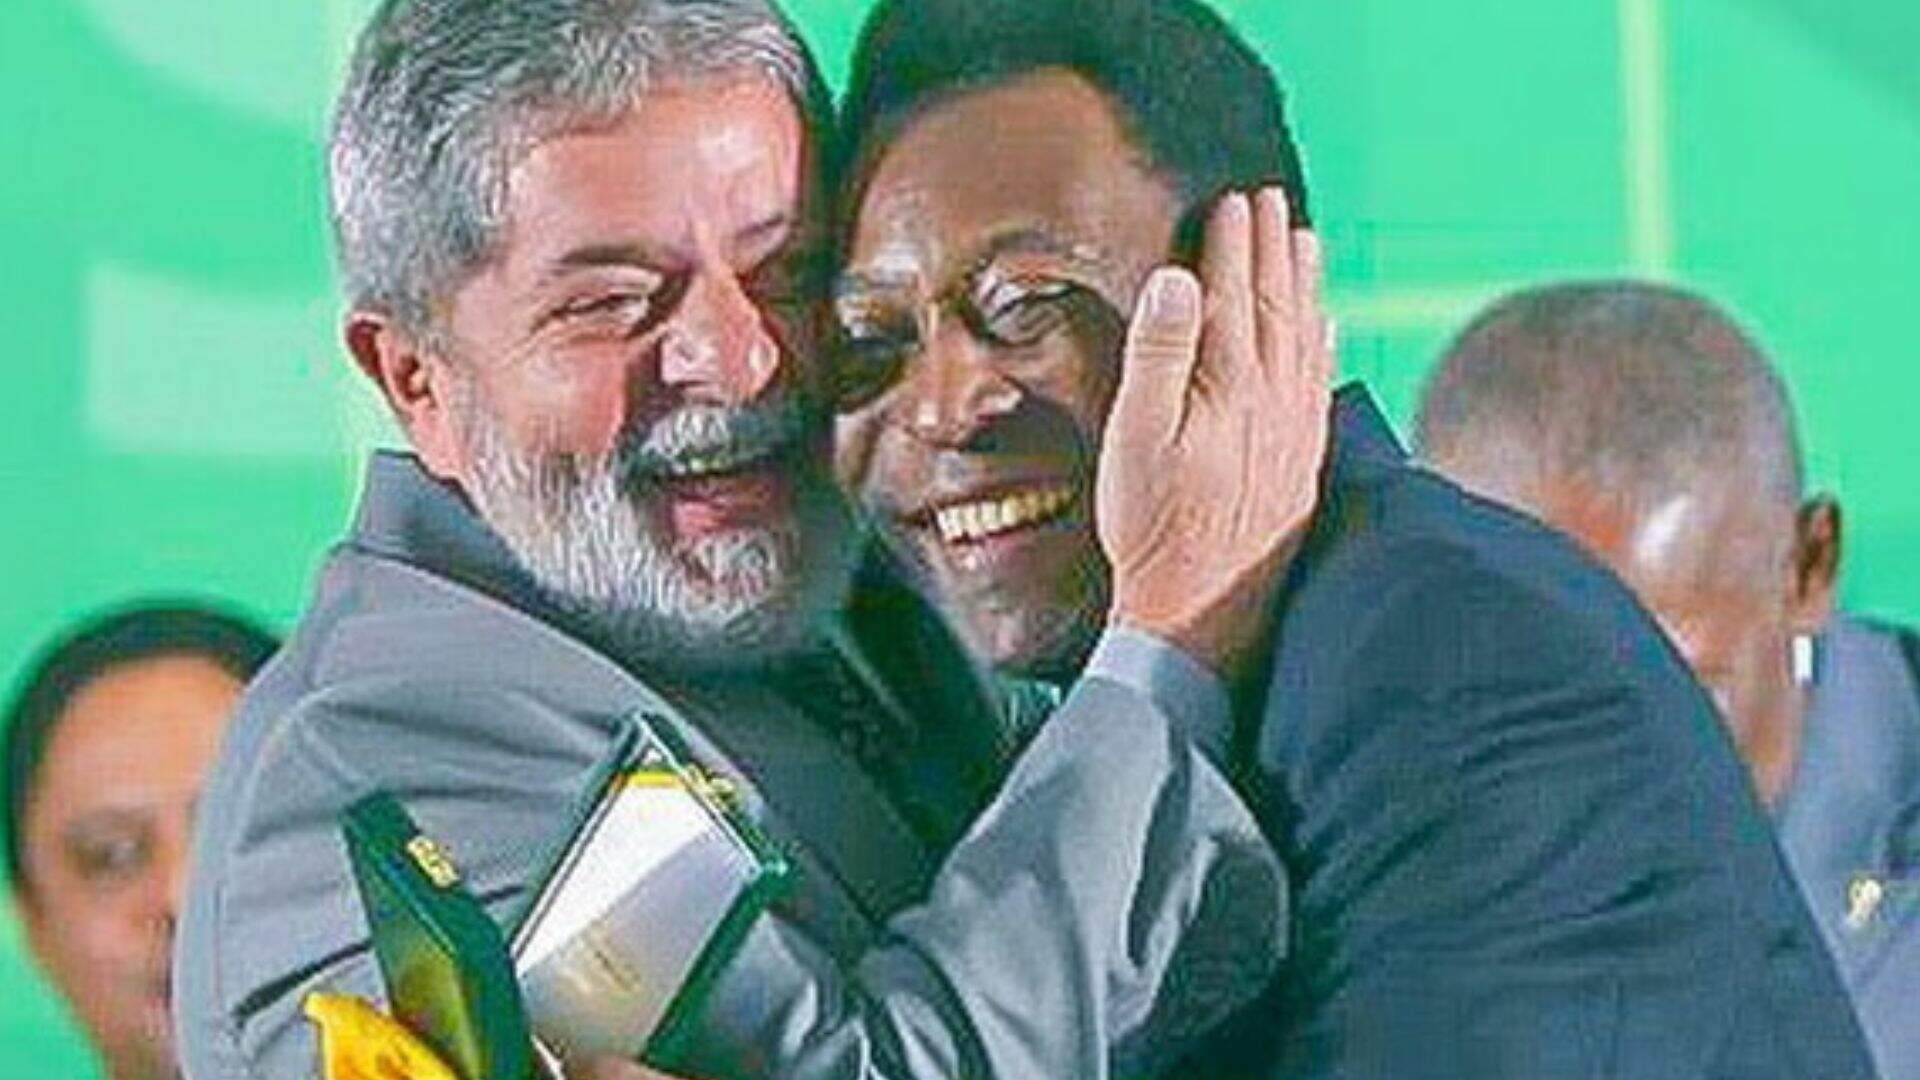 Família mantém desejo de Pelé ser enterrado apenas após posse de Lula à presidência